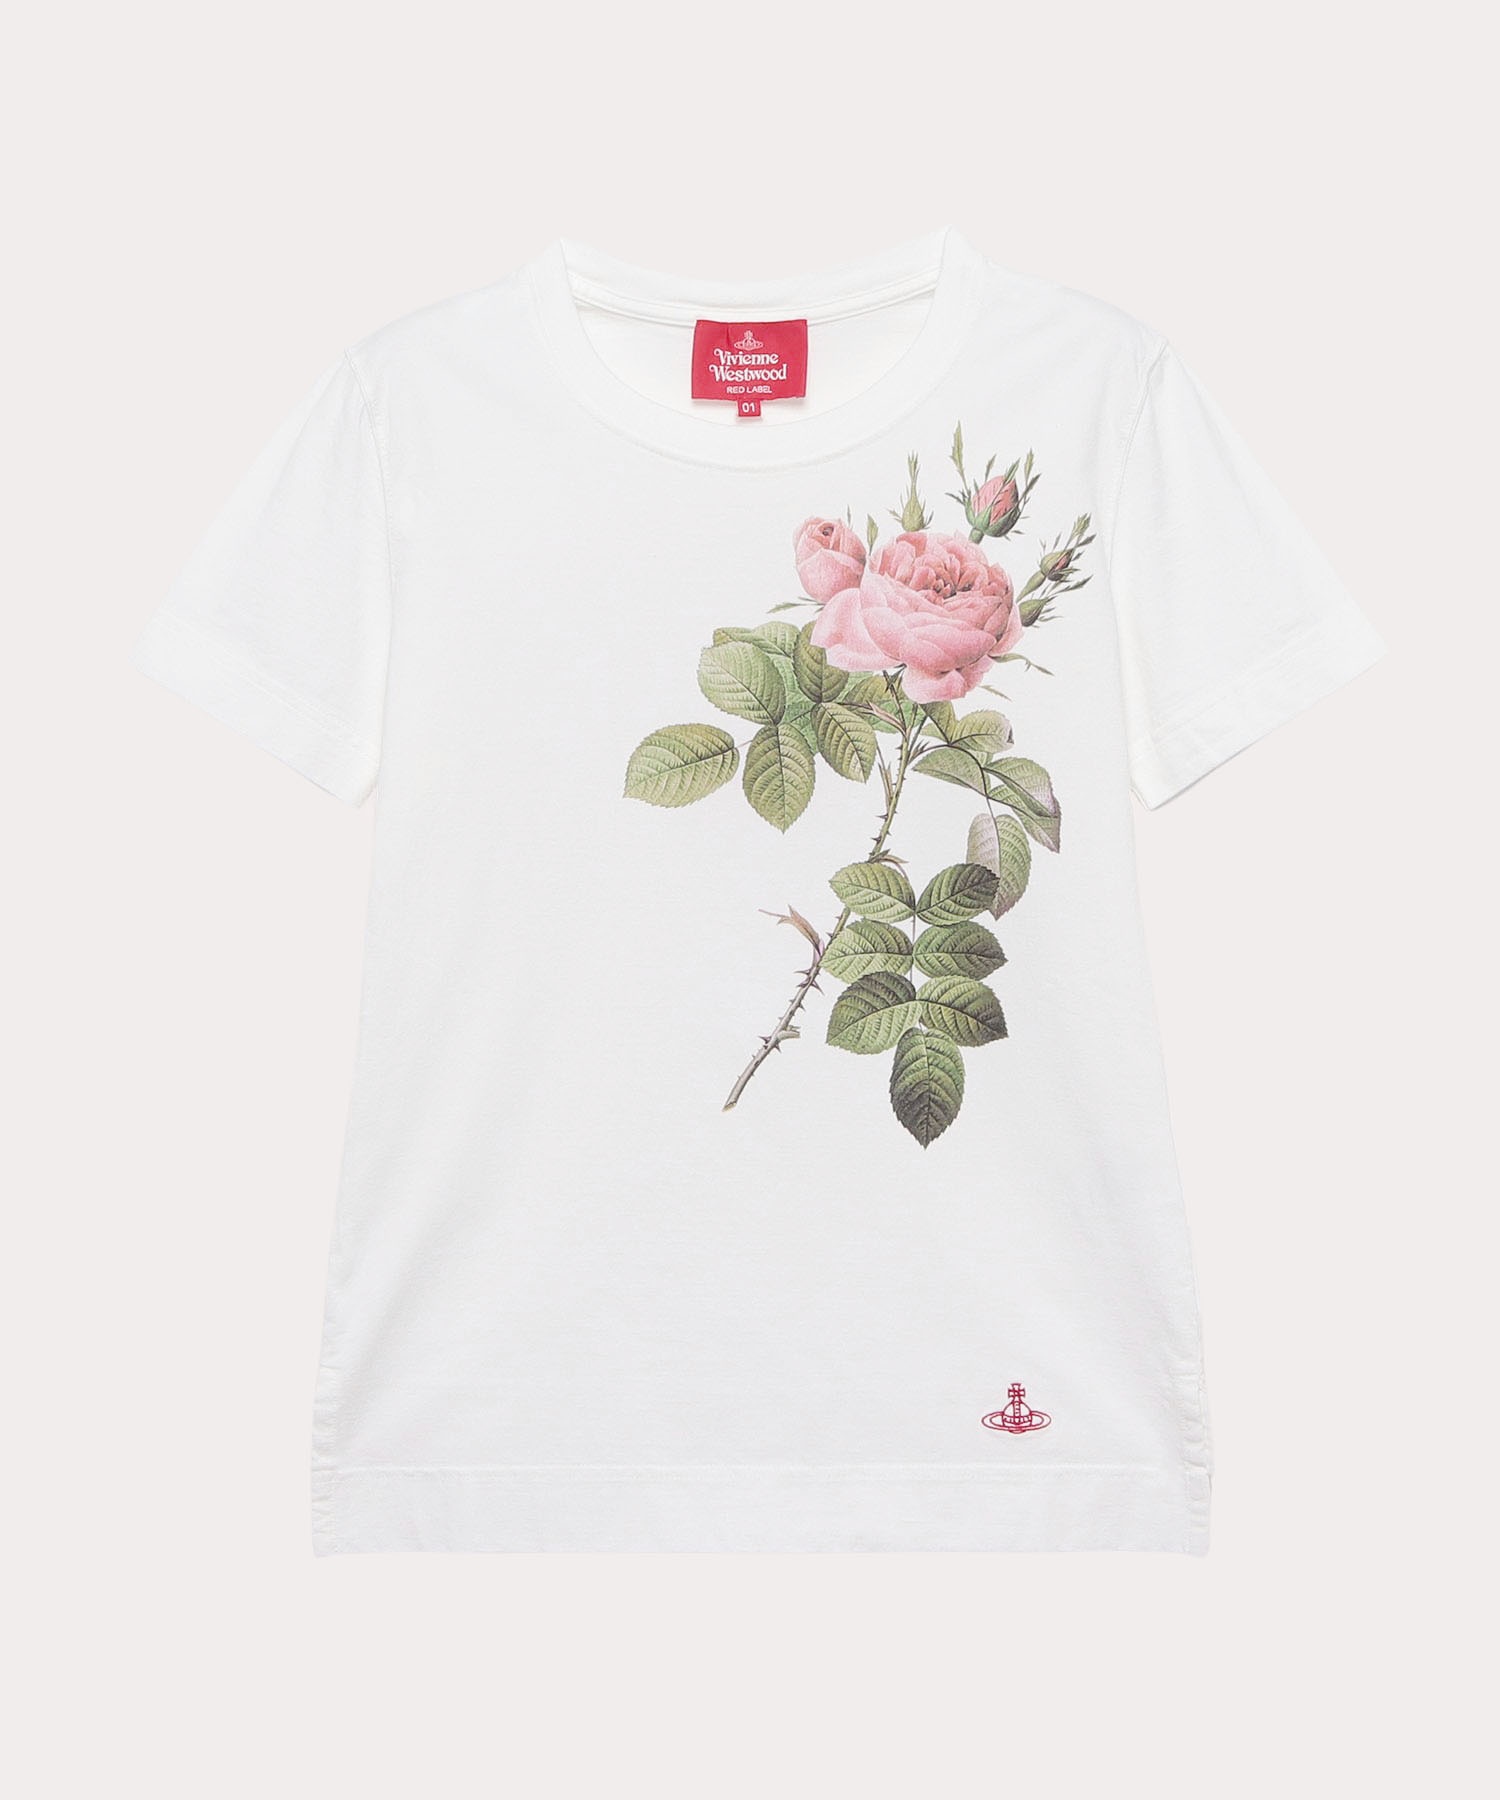 12,480円【Vivienne Westwood MAN】REDOUTE ROSE シャツ